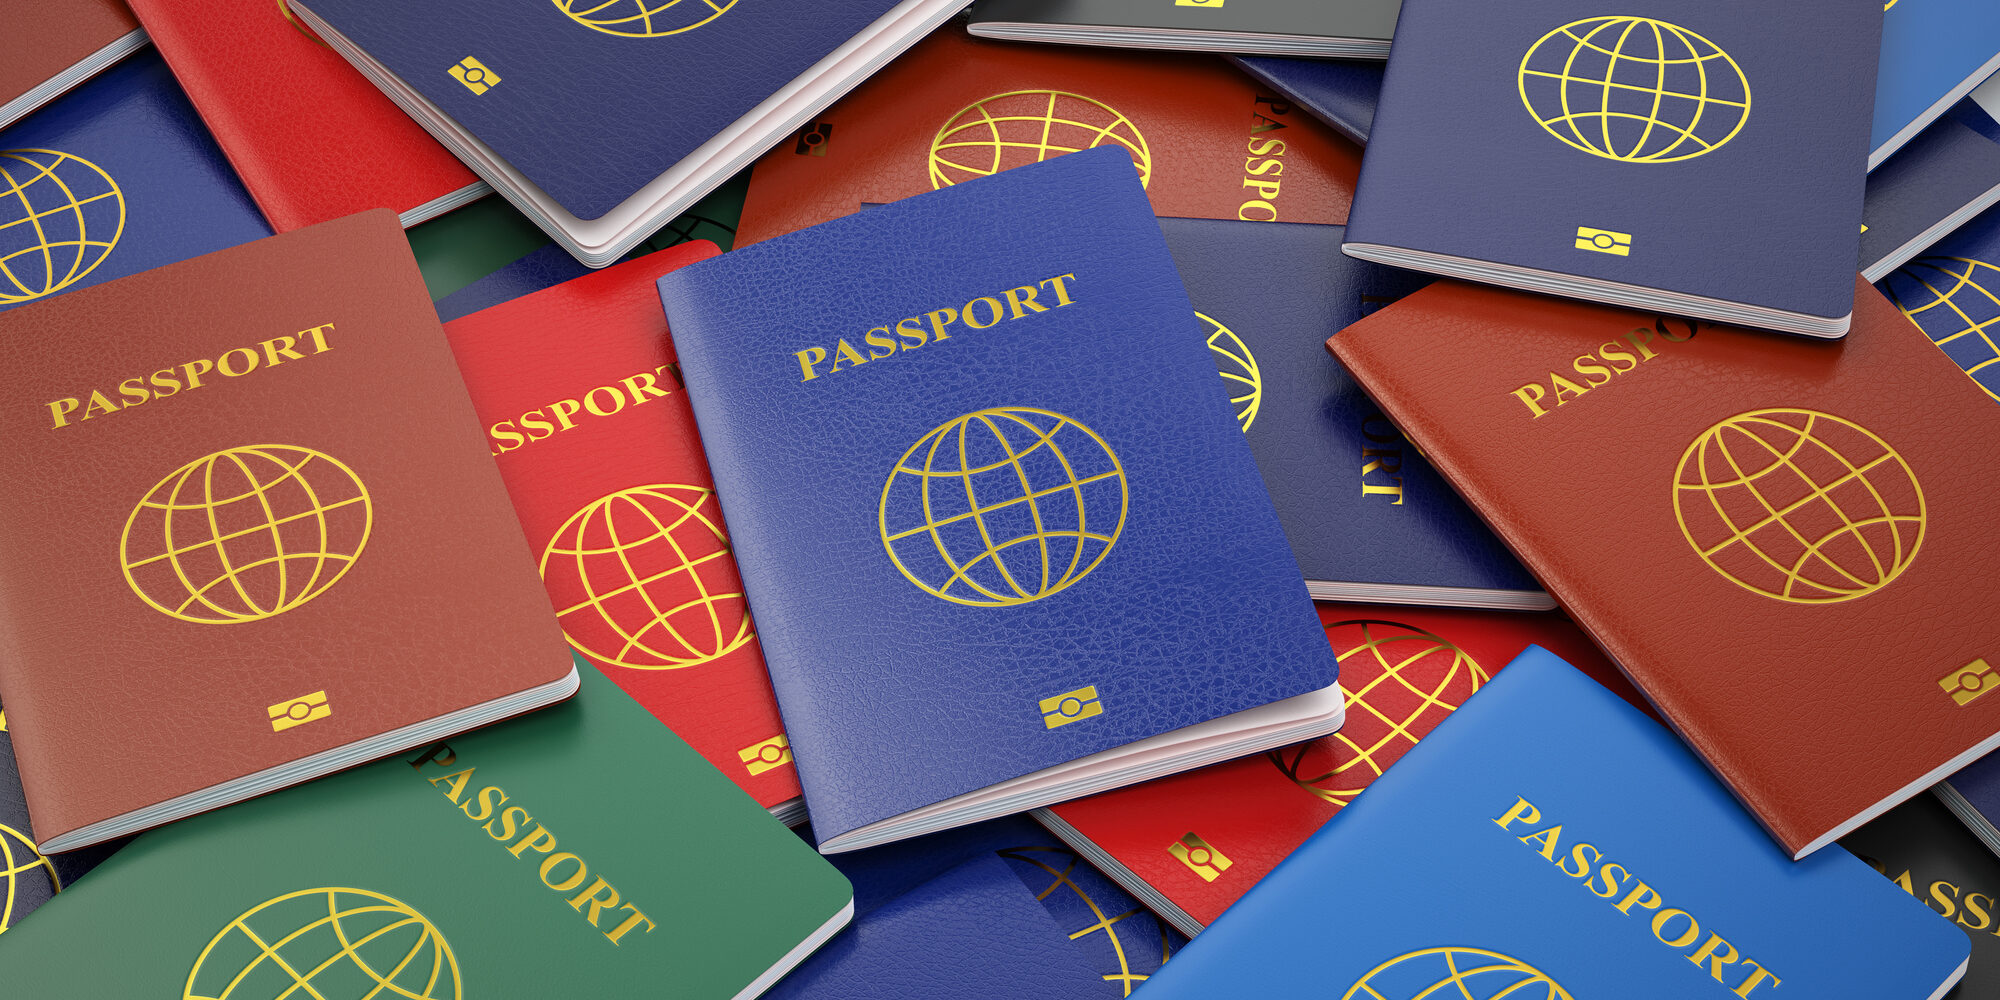 Was sagt die Farbe eines Reisepasses aus?